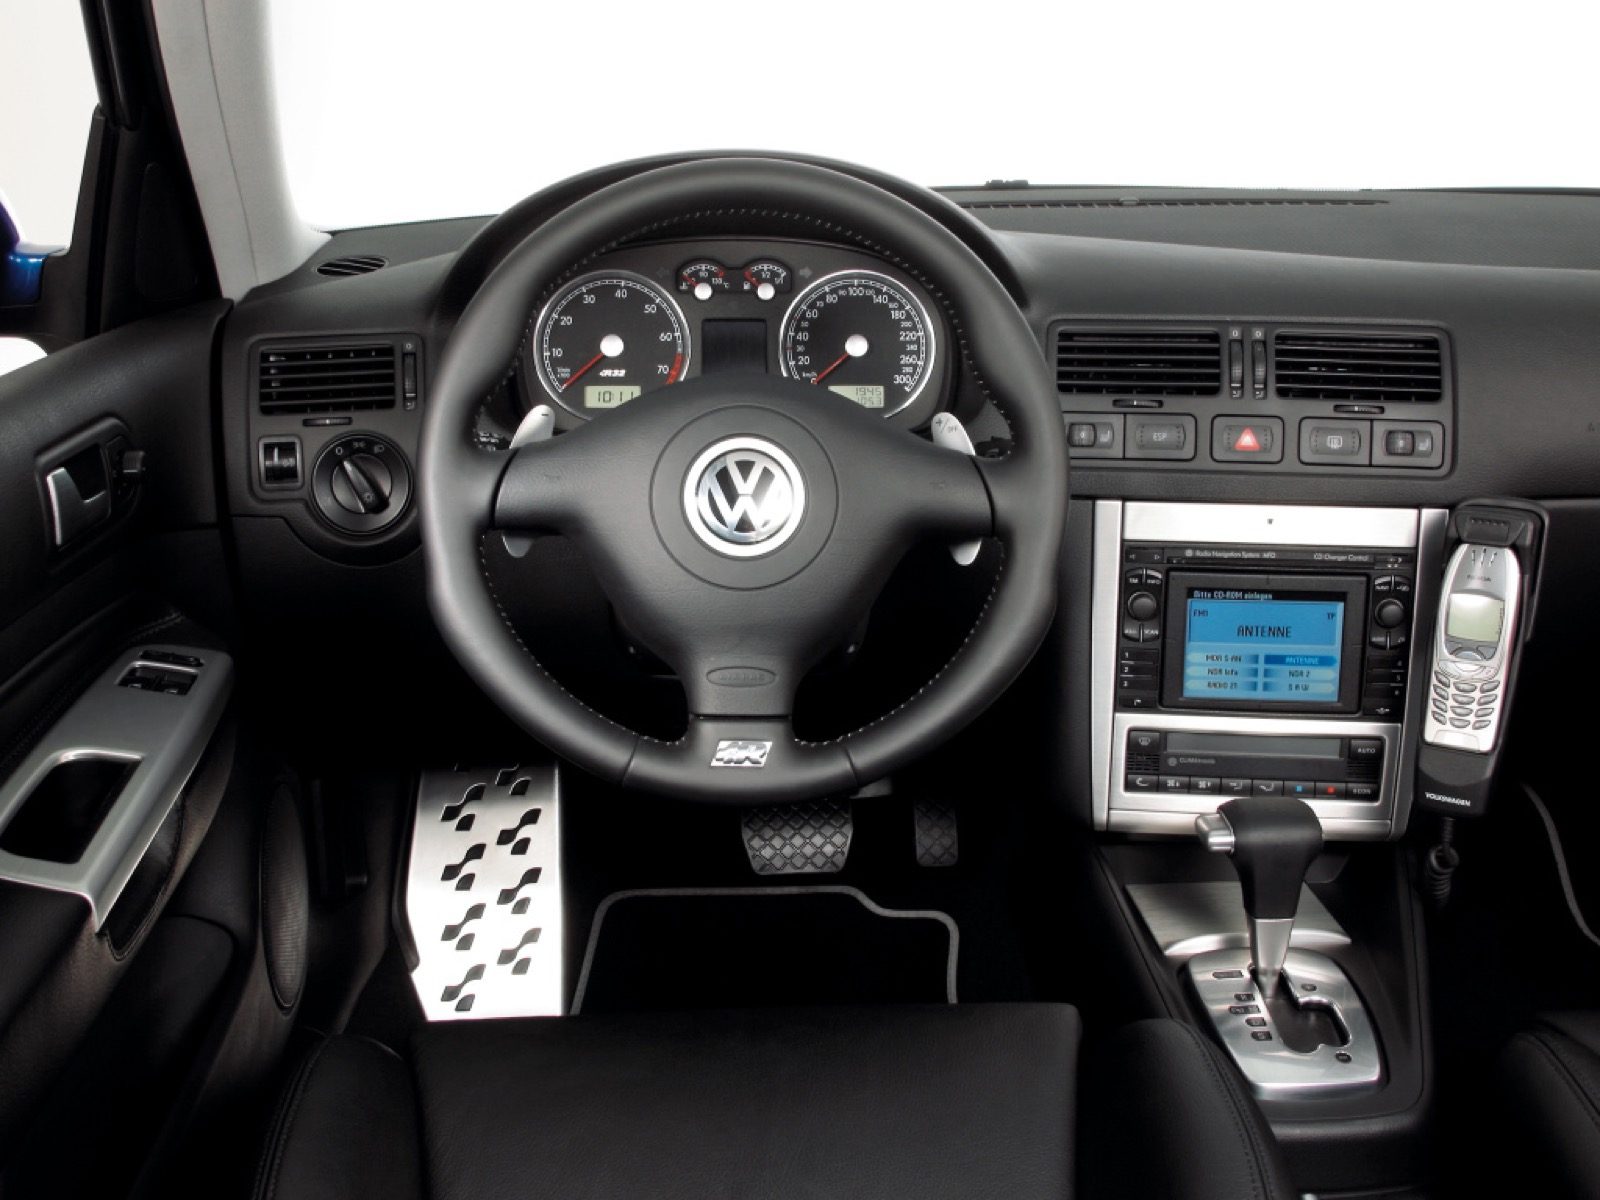 Stun opslaan hotel 10 redenen waarom de Volkswagen Golf 4 briljant is - Autoblog.nl